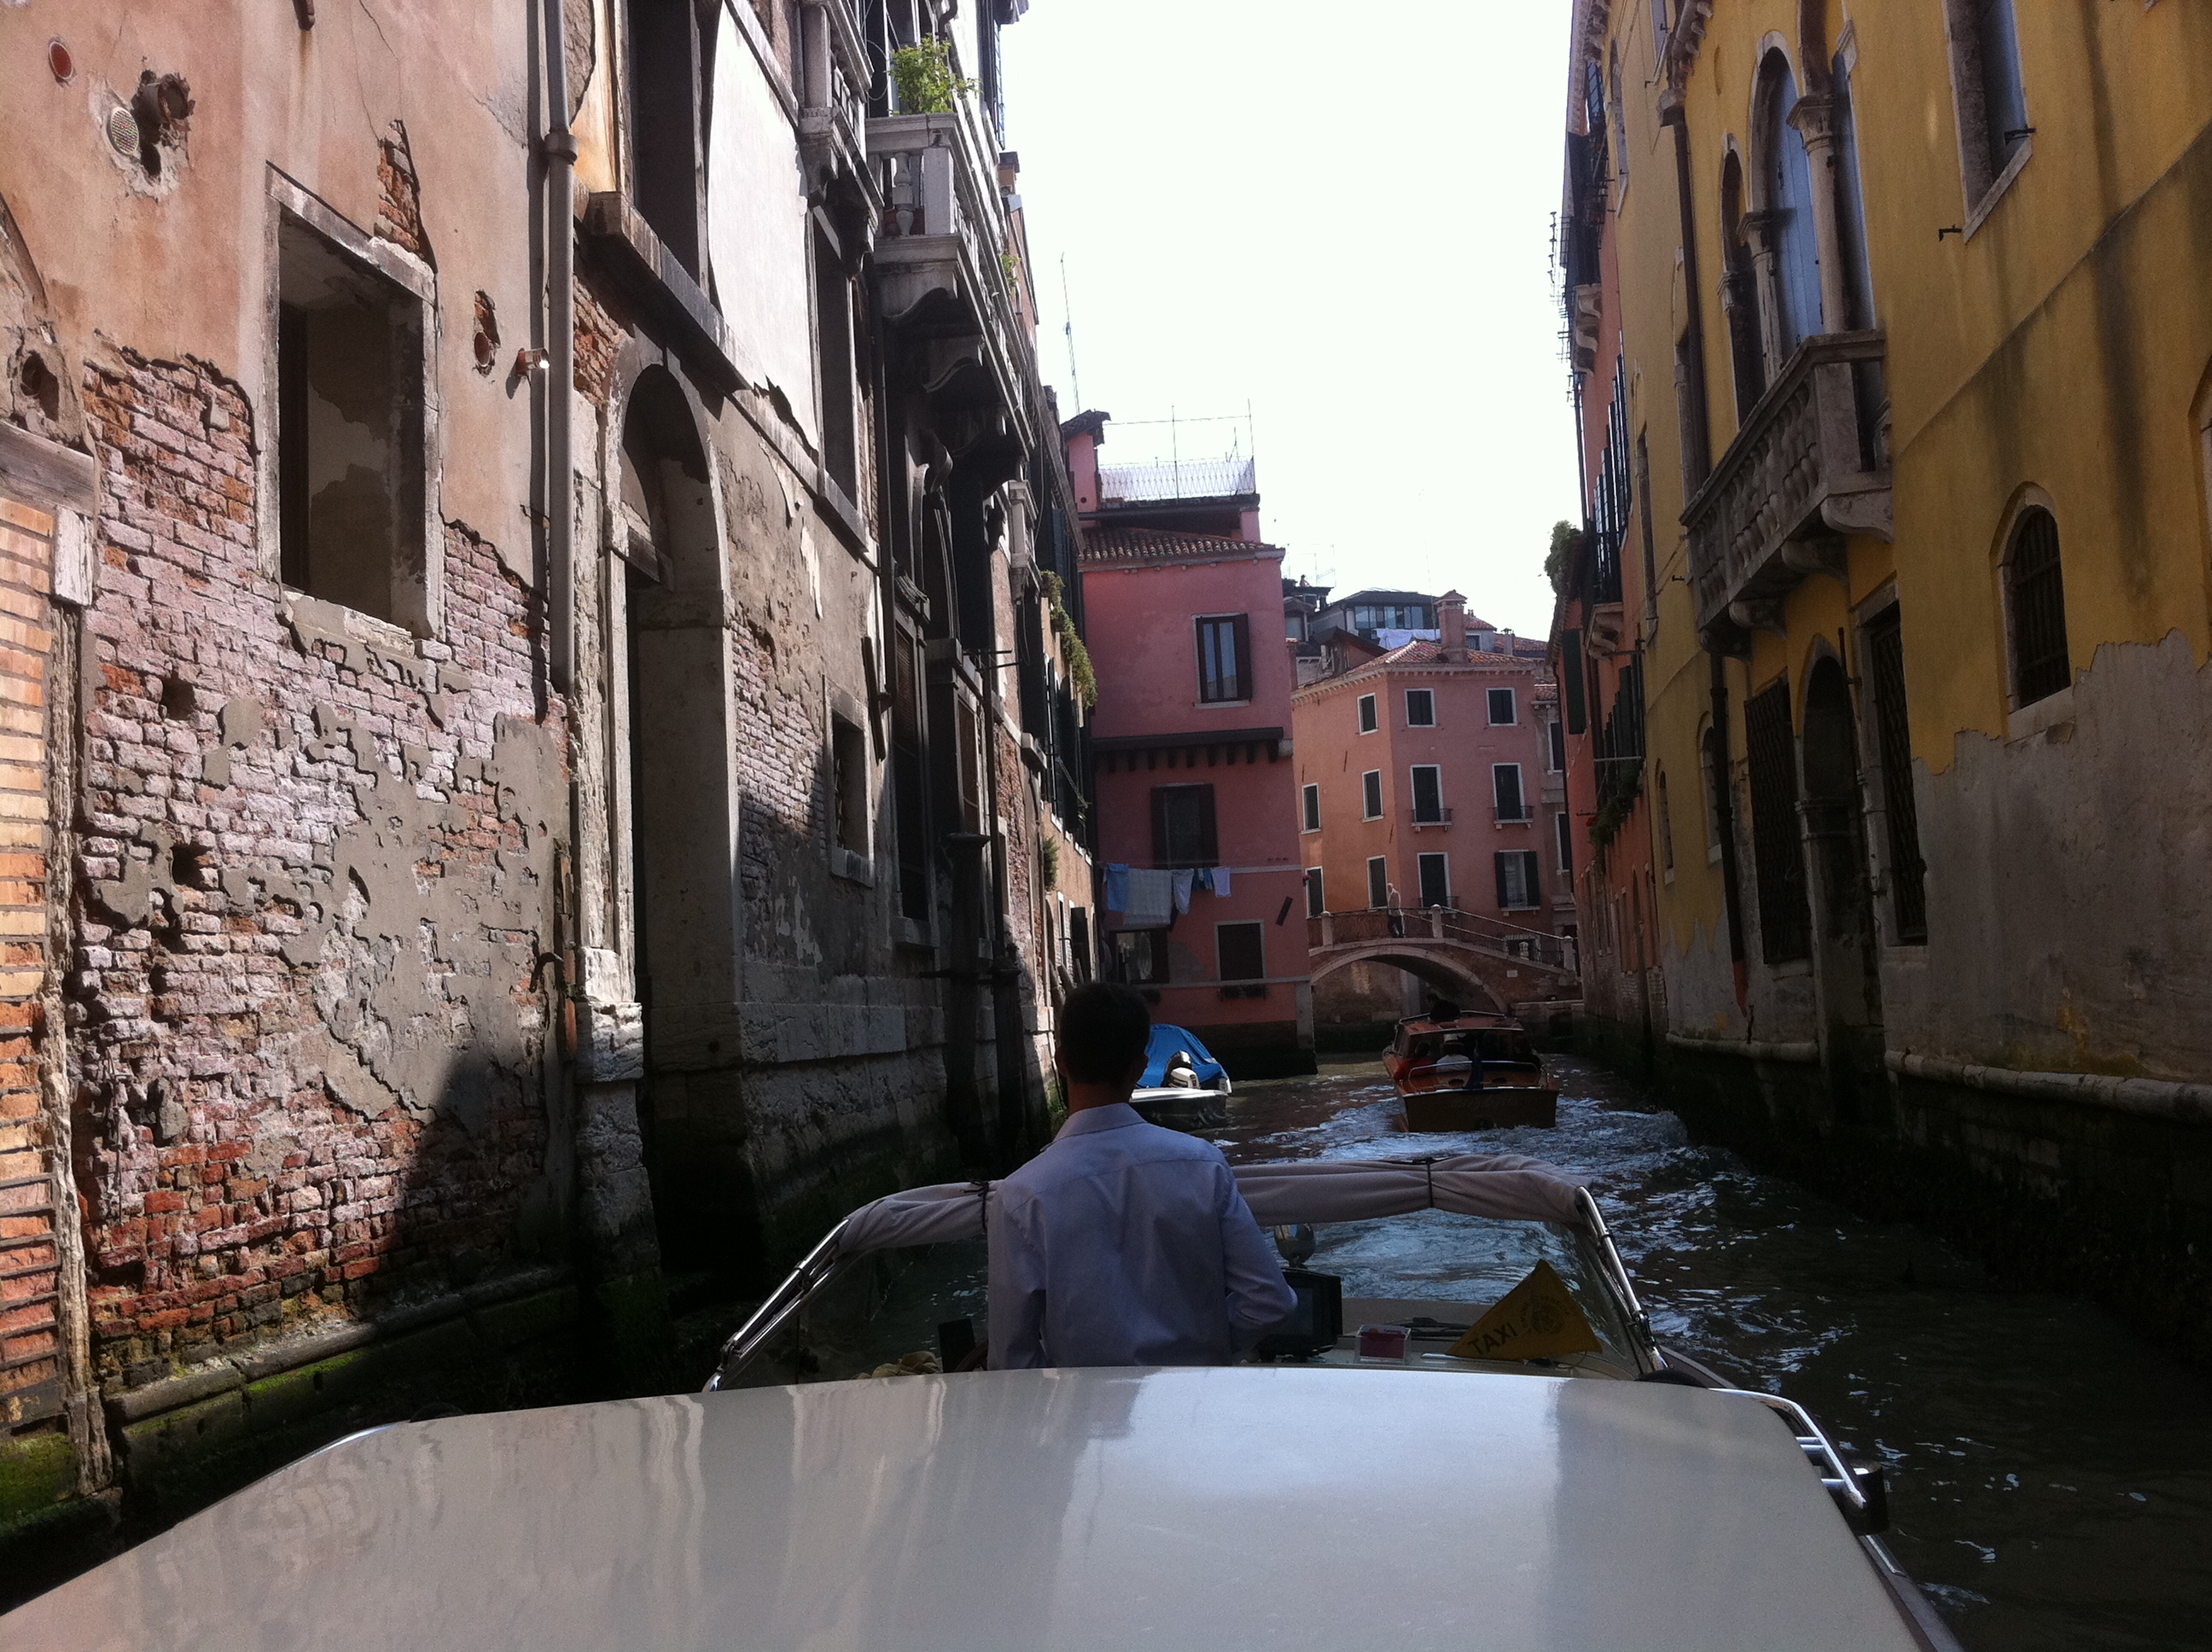 Cannaregio canals in Venice